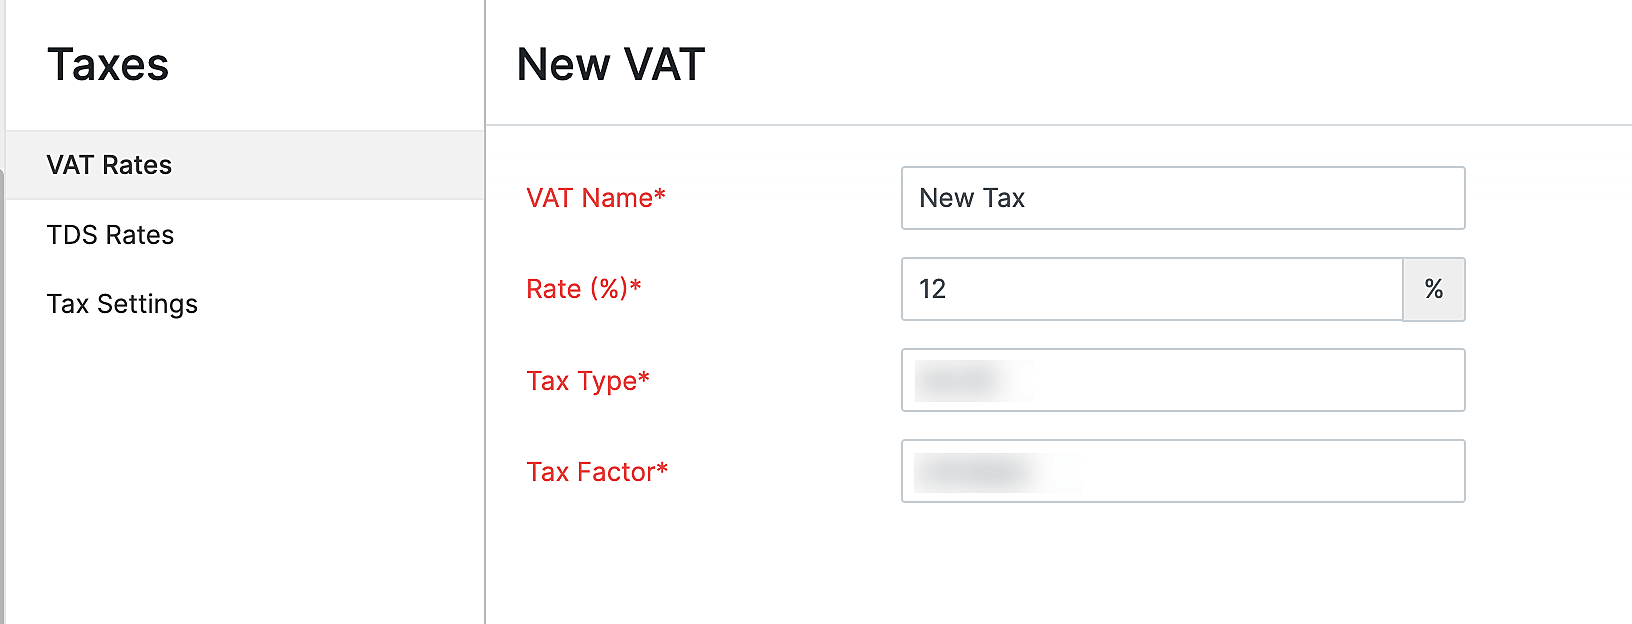 New Taxes